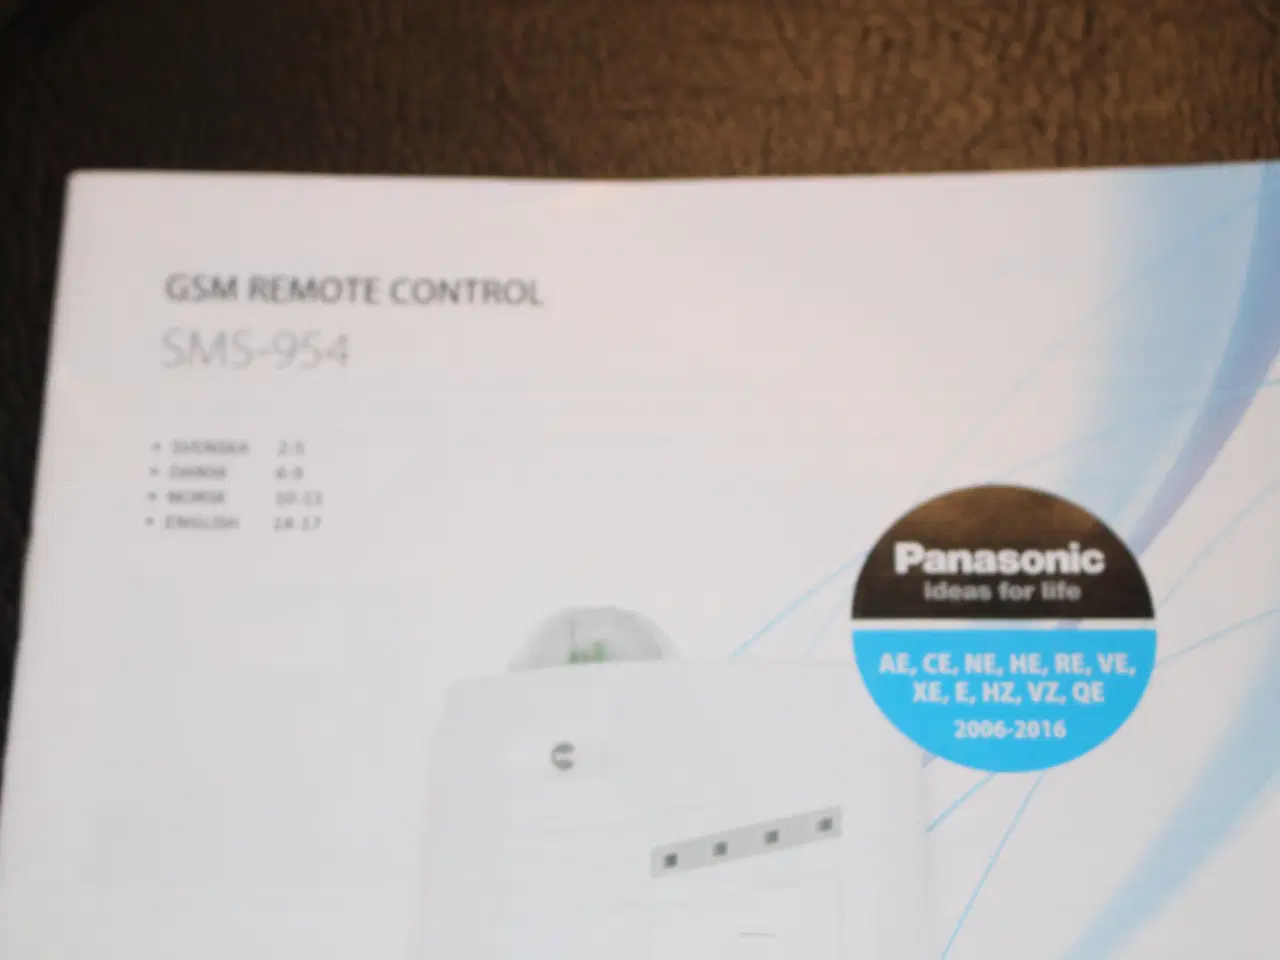 Billede 1 - Panasonic GSM remote control (til SIM kort)